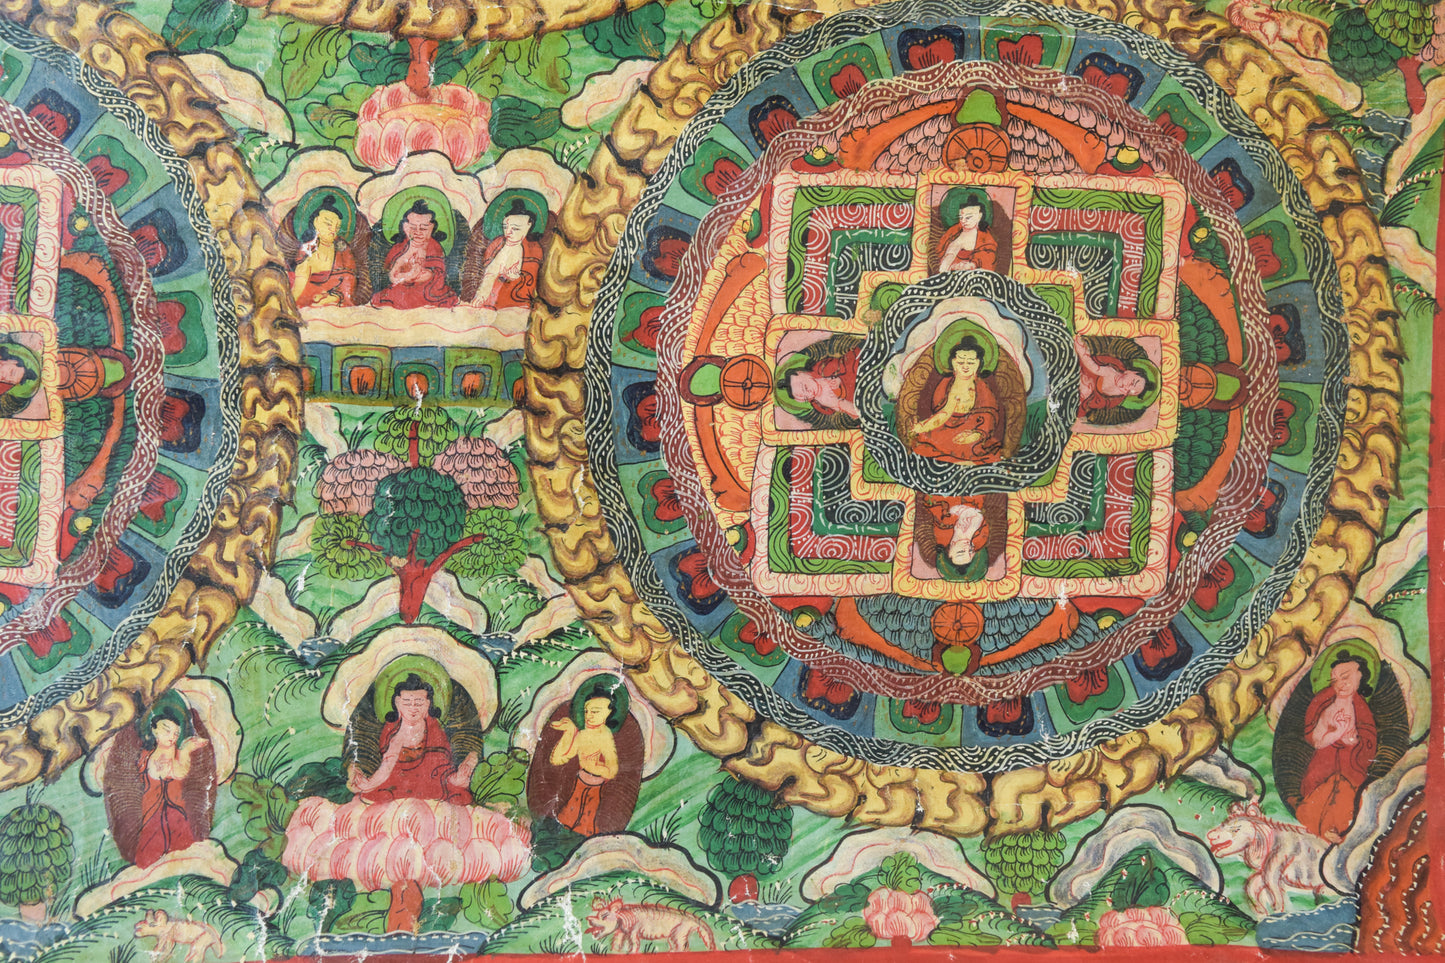 Pergamino tibetano pintado a mano